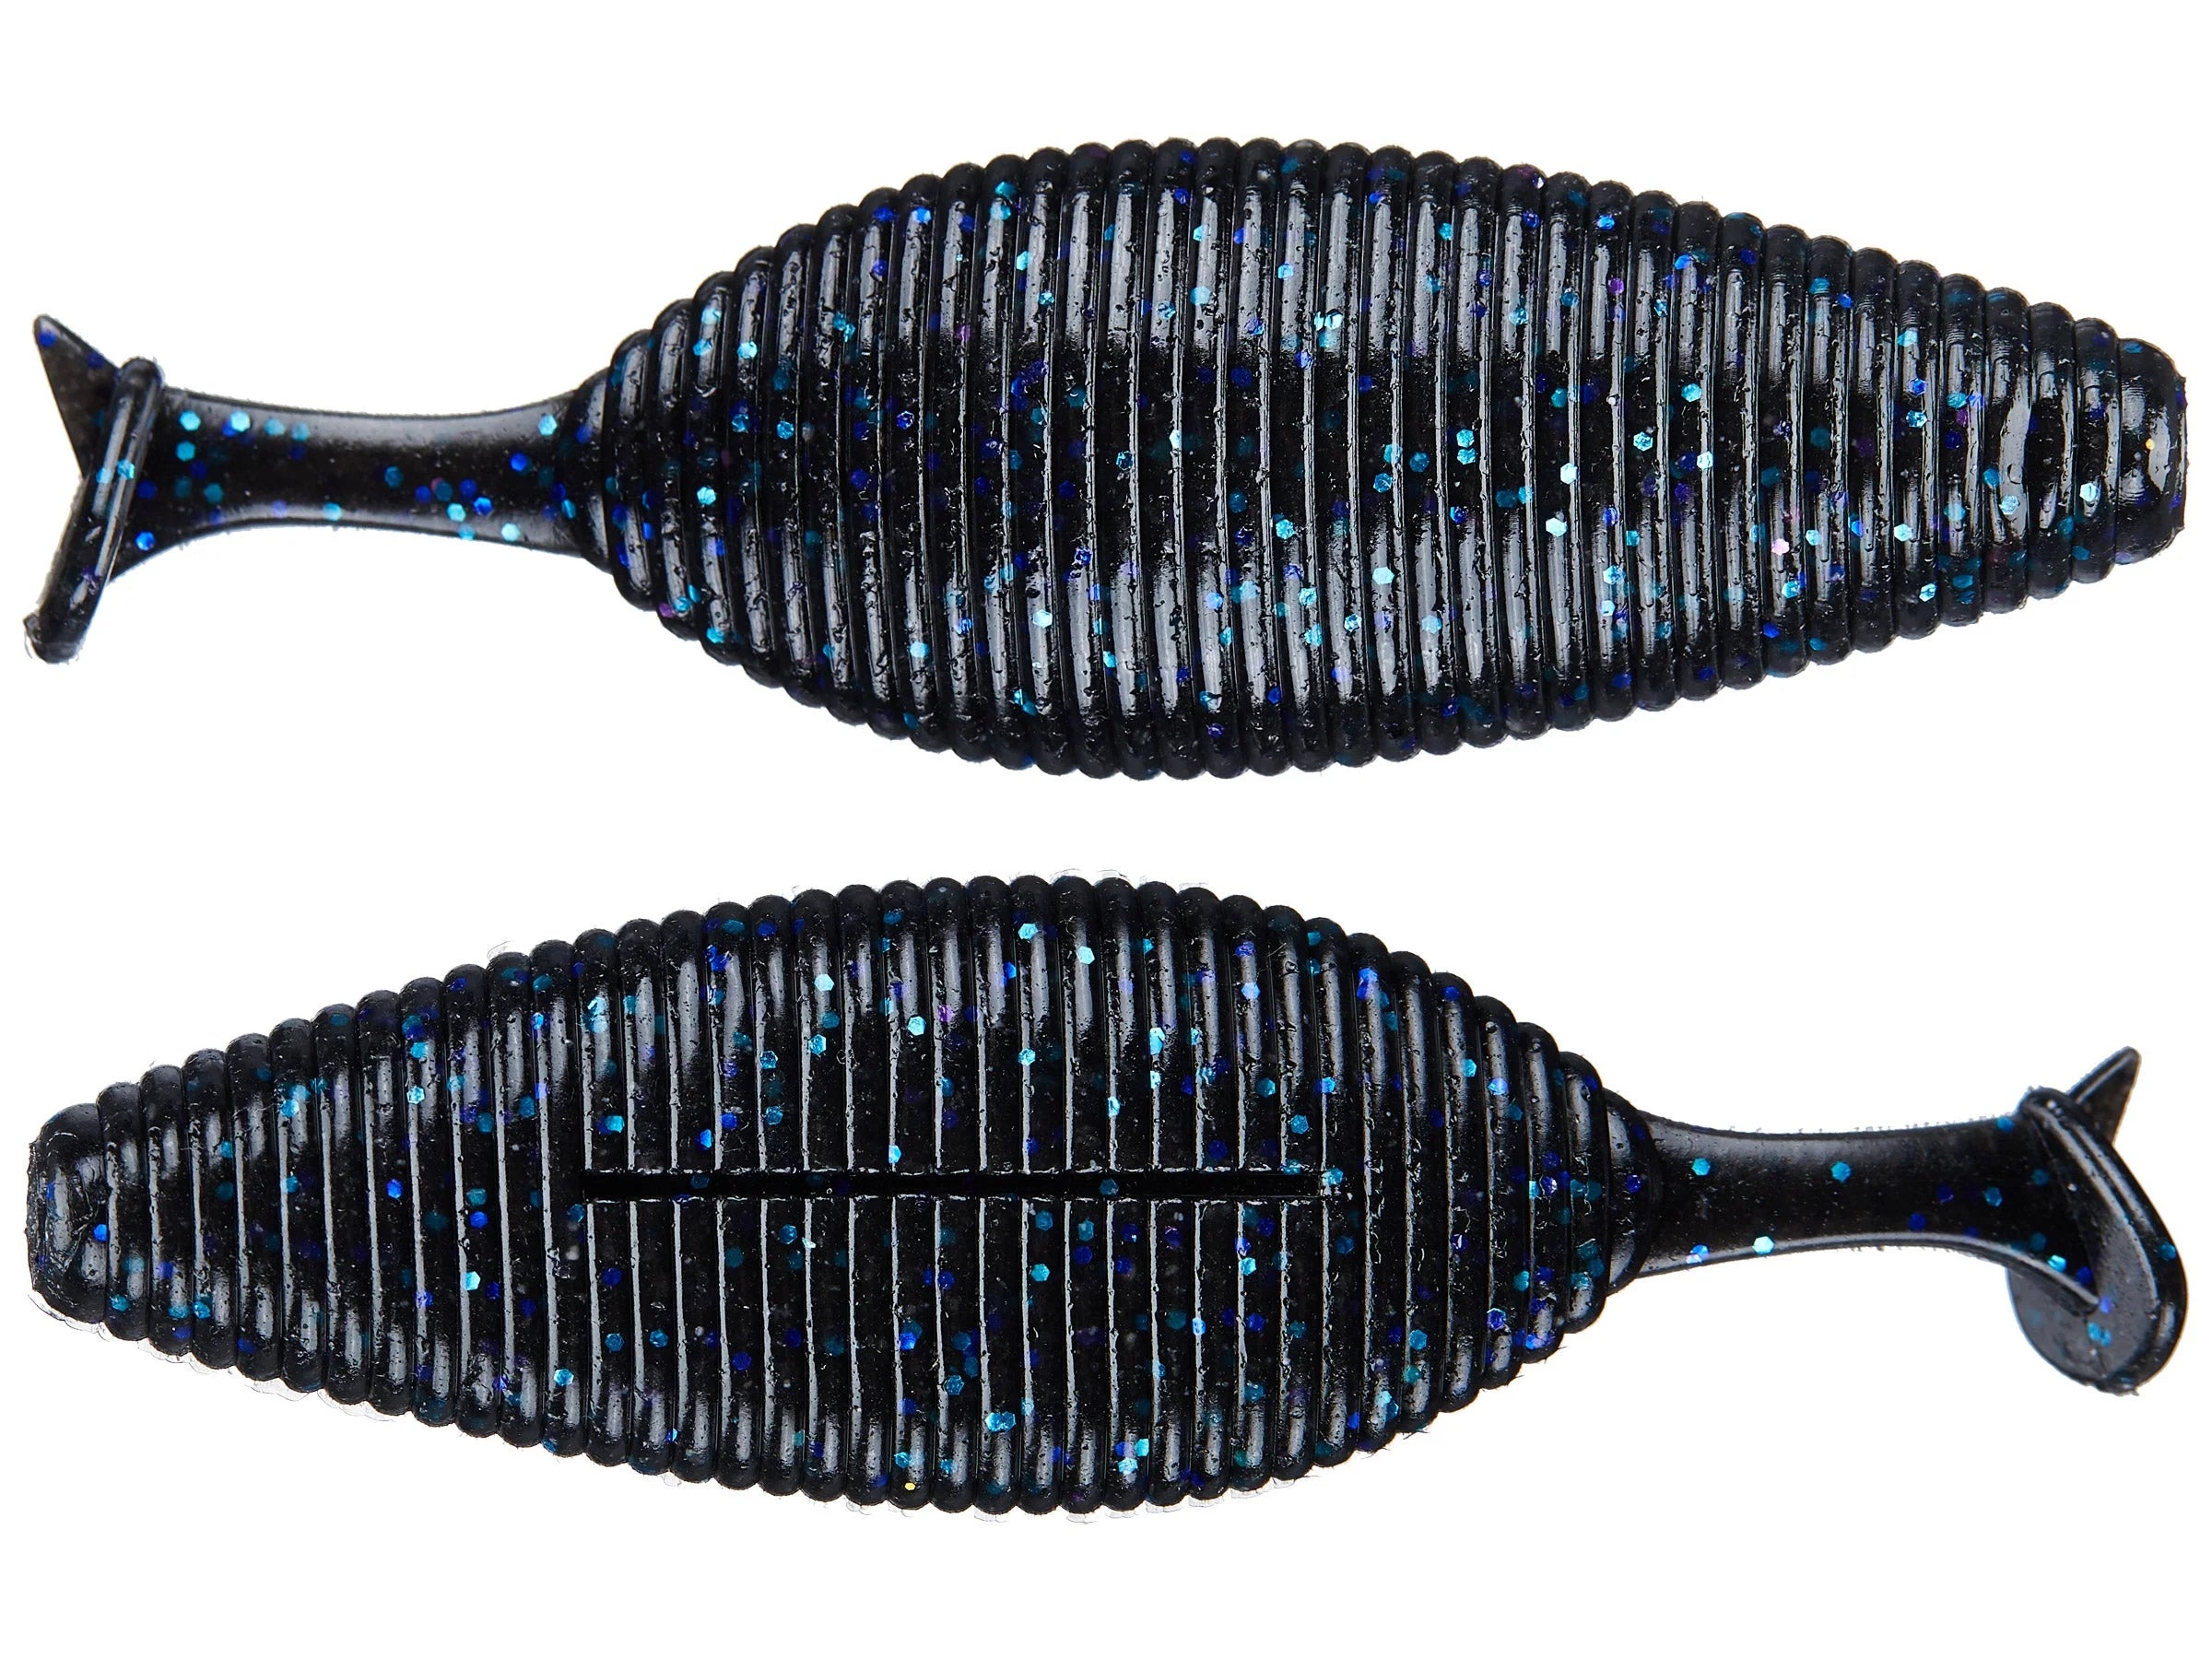 Buy 029-black-blue-flake GEECRACK SPIRON CREATURE BAIT